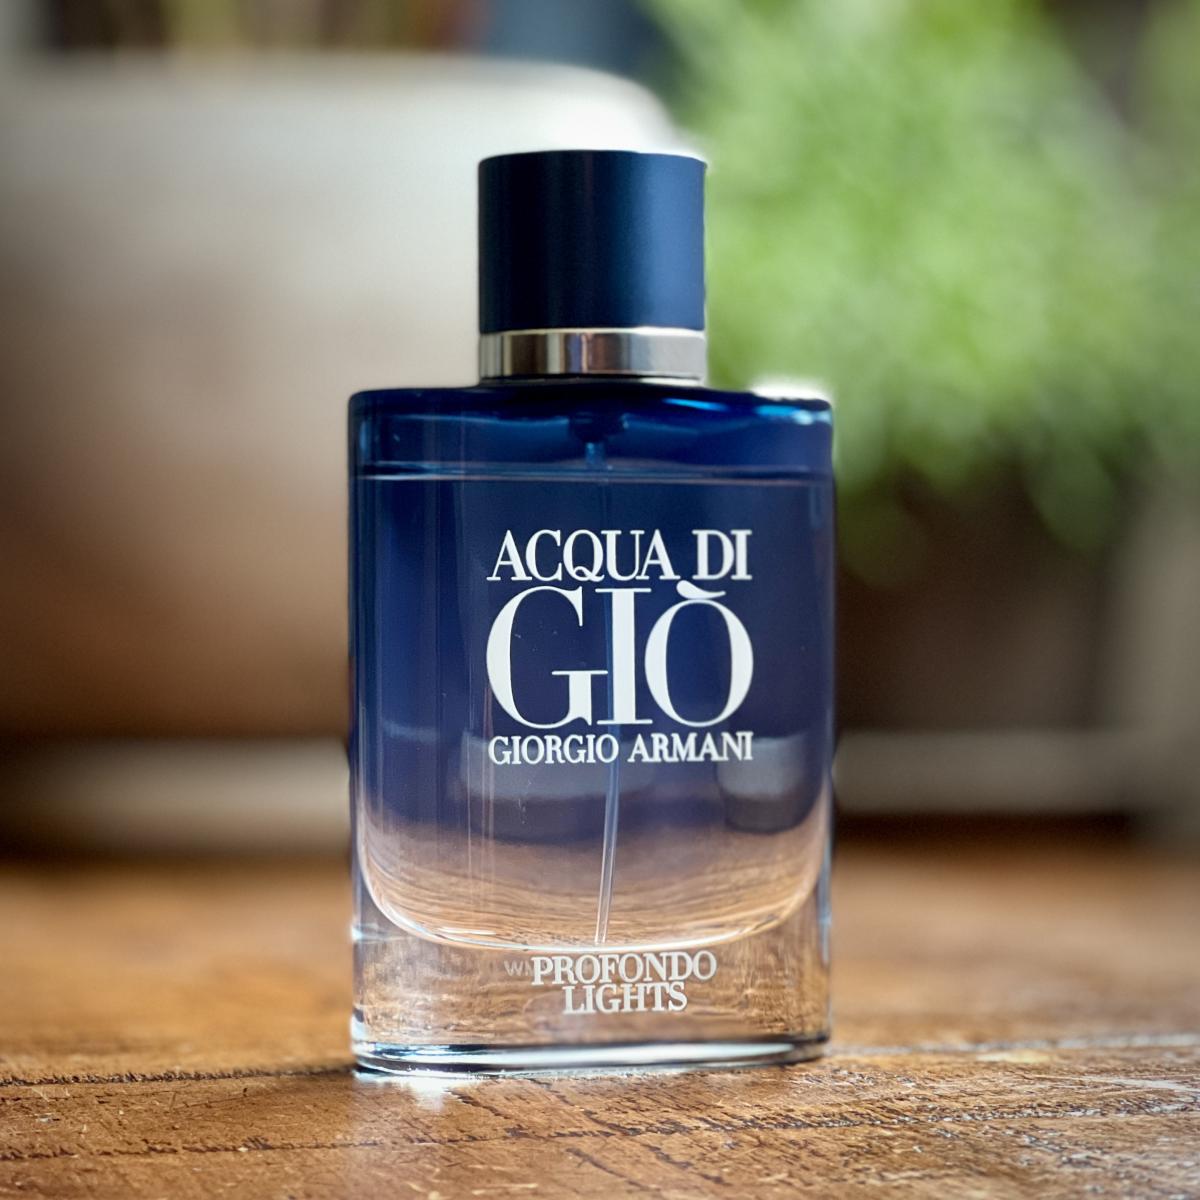 Acqua di Giò Profondo Lights Giorgio Armani cologne - a fragrance for ...